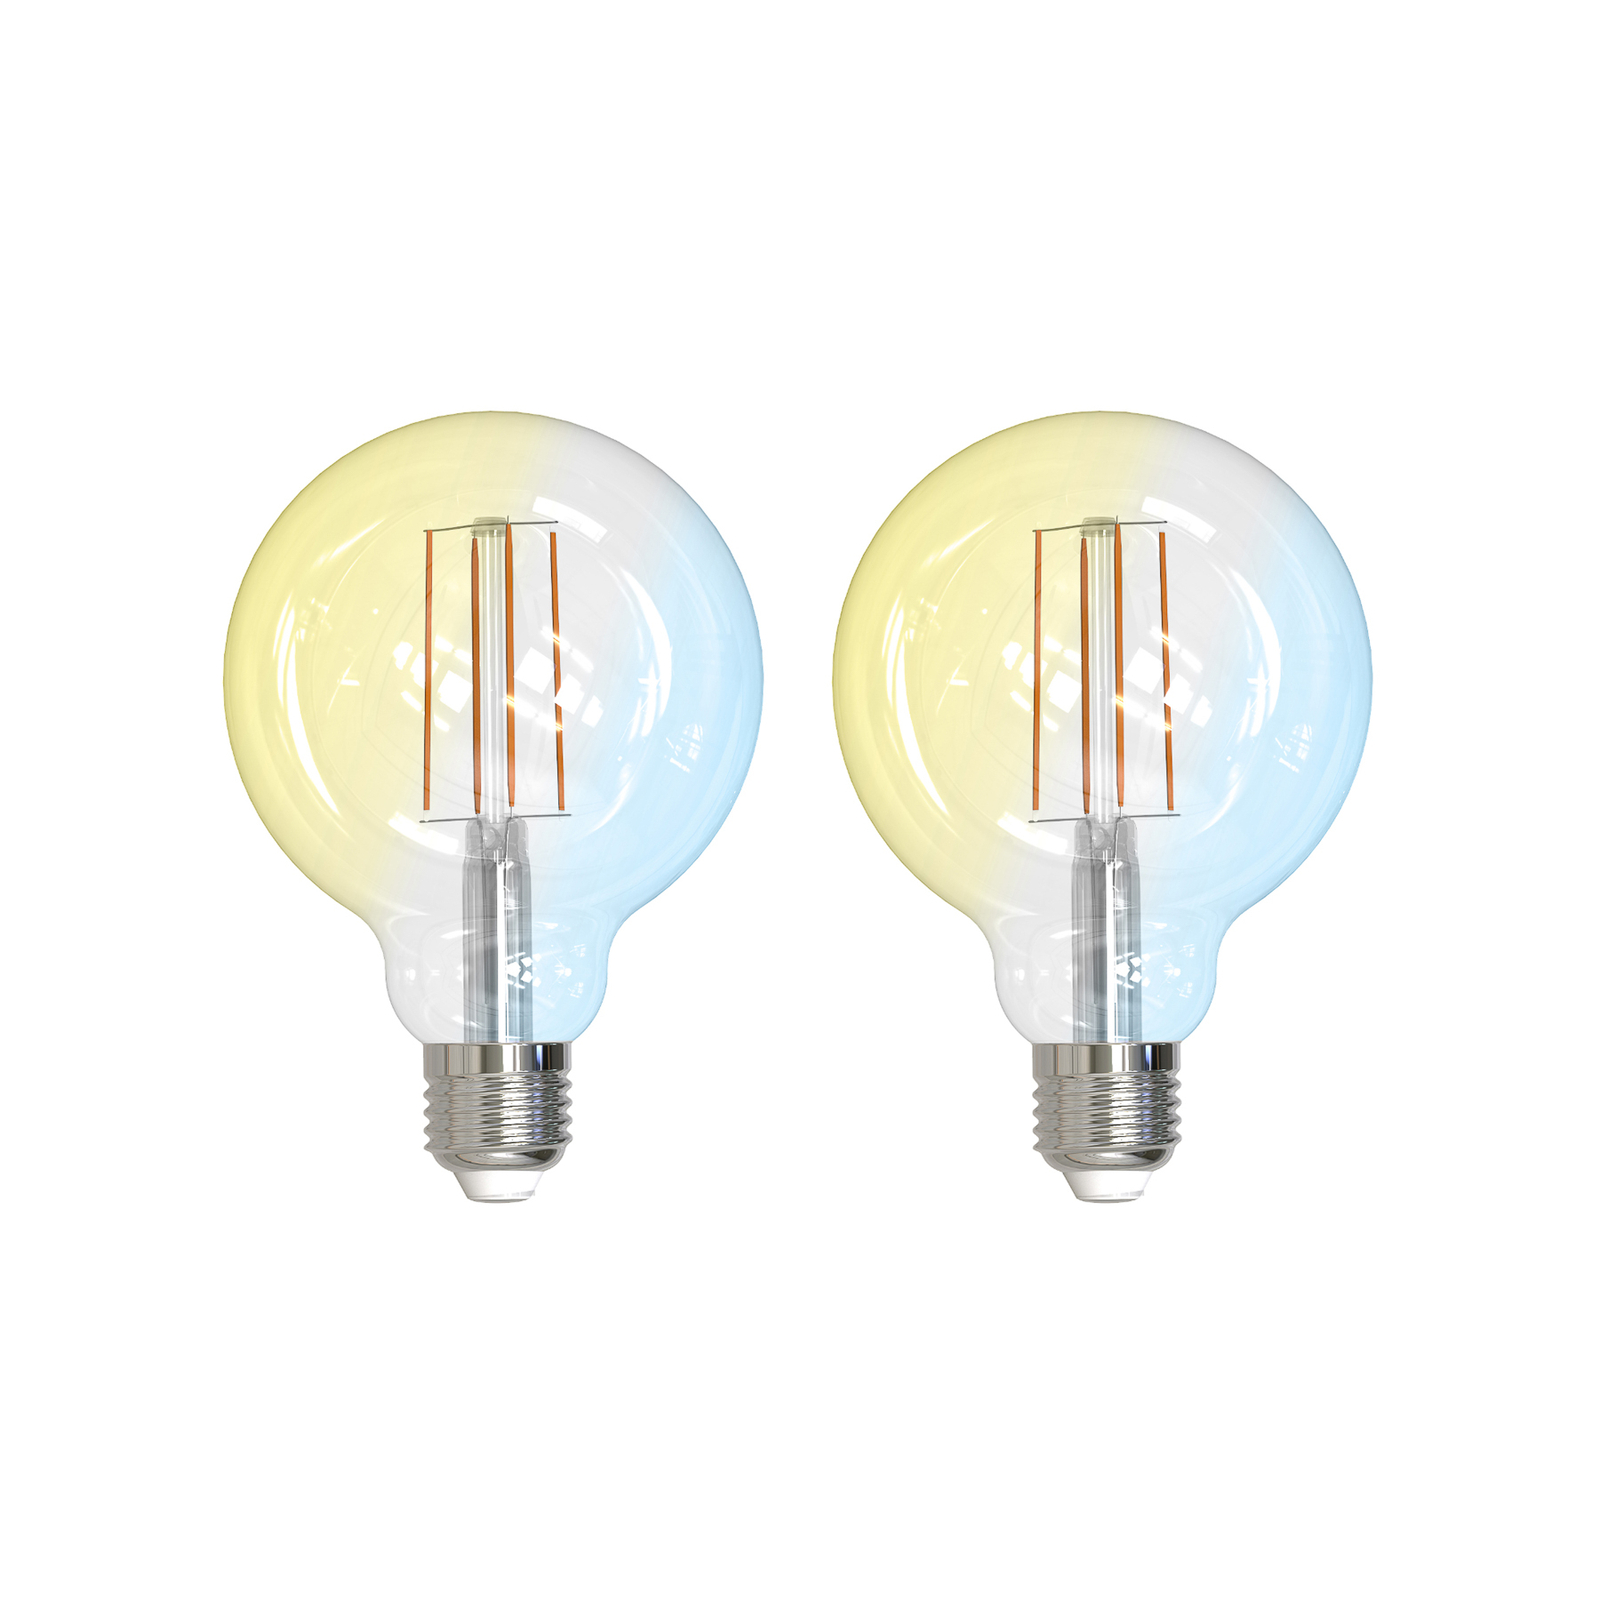 LUUMR Smart LED, 2 darabos készlet, izzószál, E27, G95, 7W, világos, Tuya